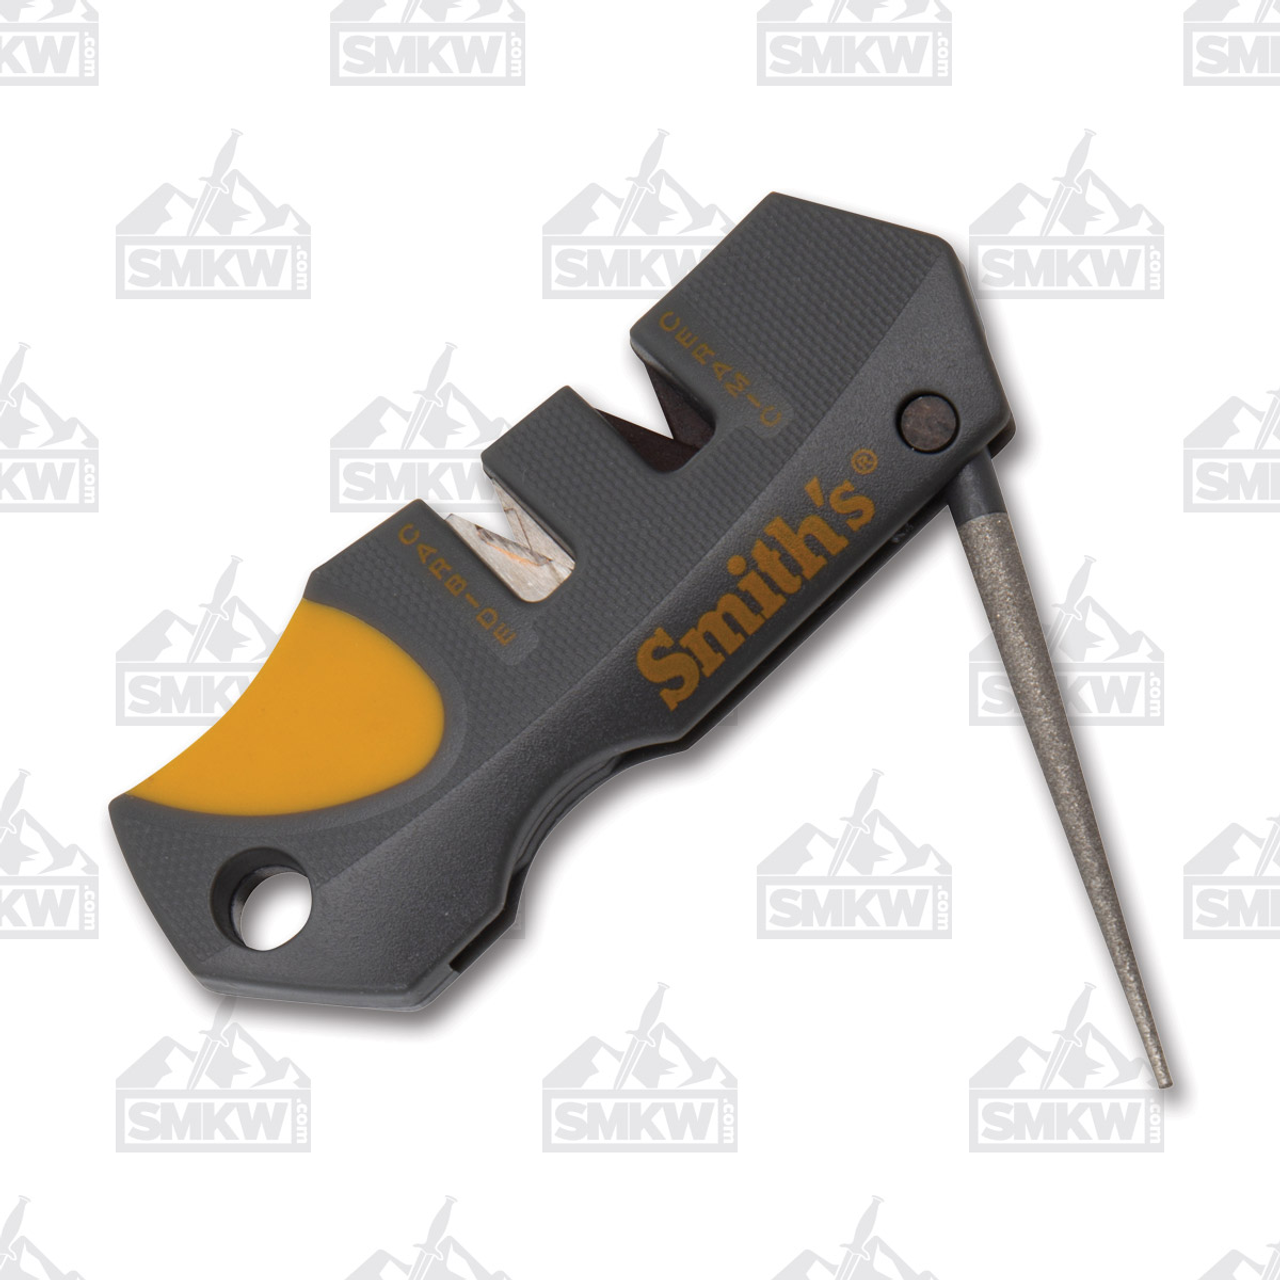 Smiths Pocket Pal X2 Knife Sharpener & Survival Tool